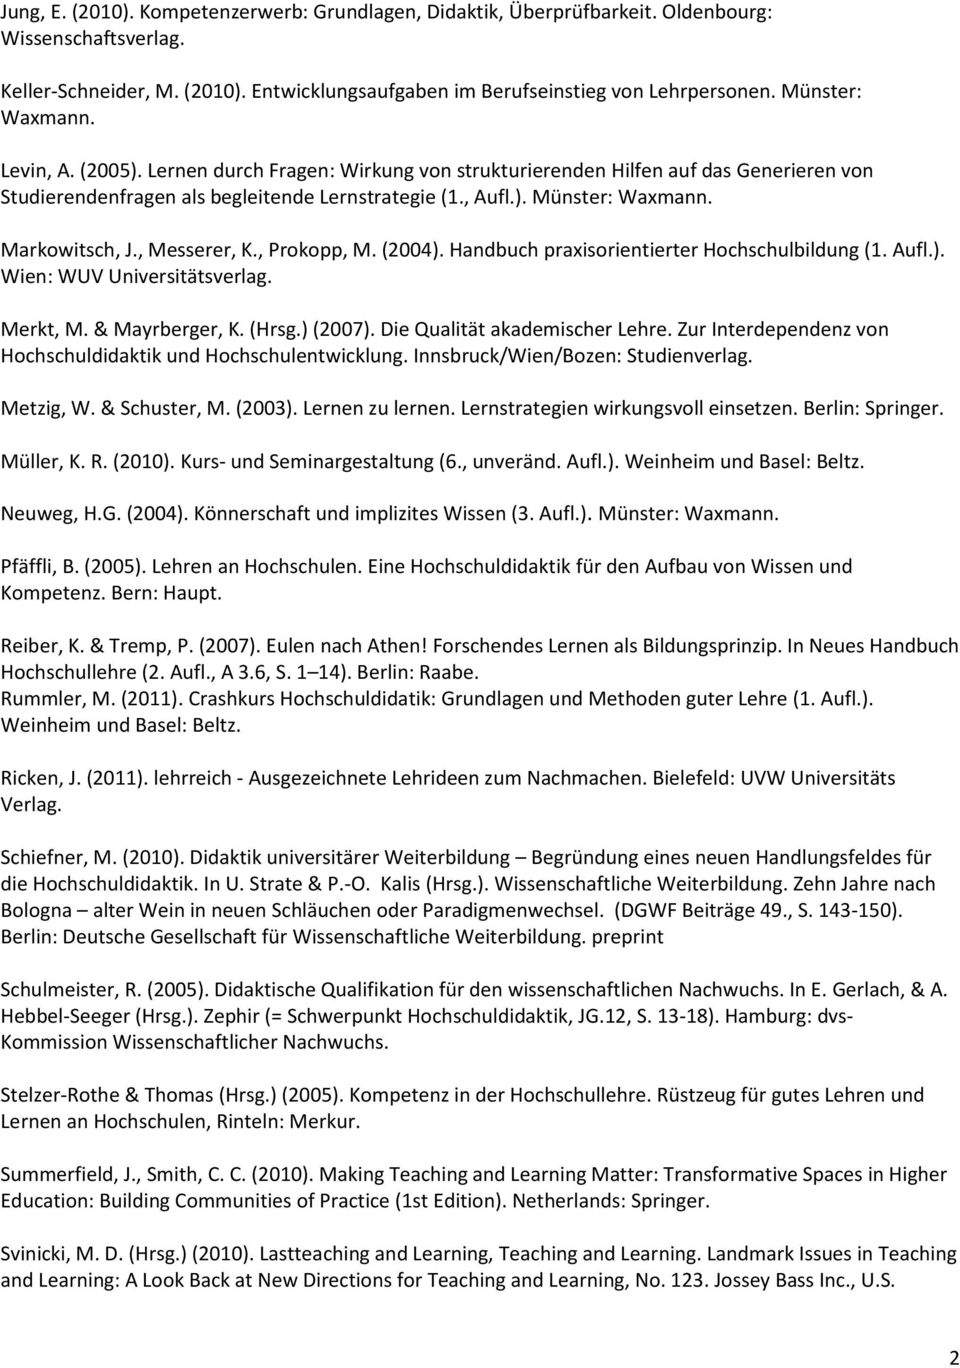 Markowitsch, J., Messerer, K., Prokopp, M. (2004). Handbuch praxisorientierter Hochschulbildung (1. Aufl.). Wien: WUV Universitätsverlag. Merkt, M. & Mayrberger, K. (Hrsg.) (2007).